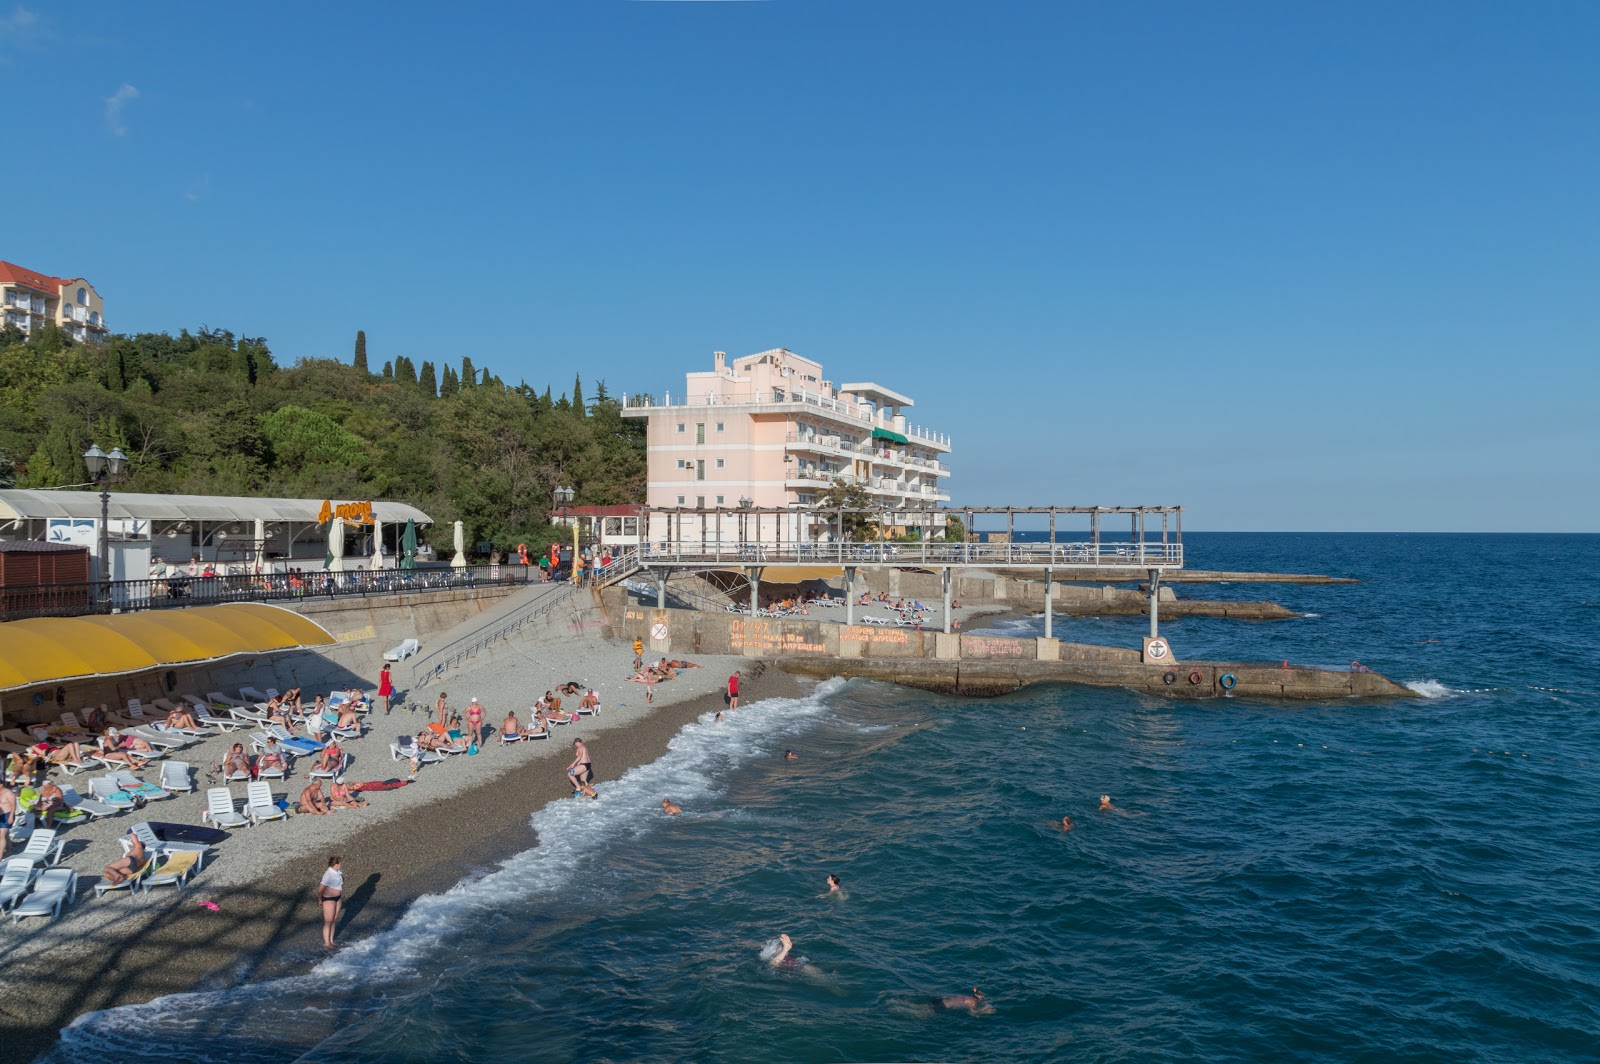 Yalta beach II'in fotoğrafı uçurumlarla desteklenmiş